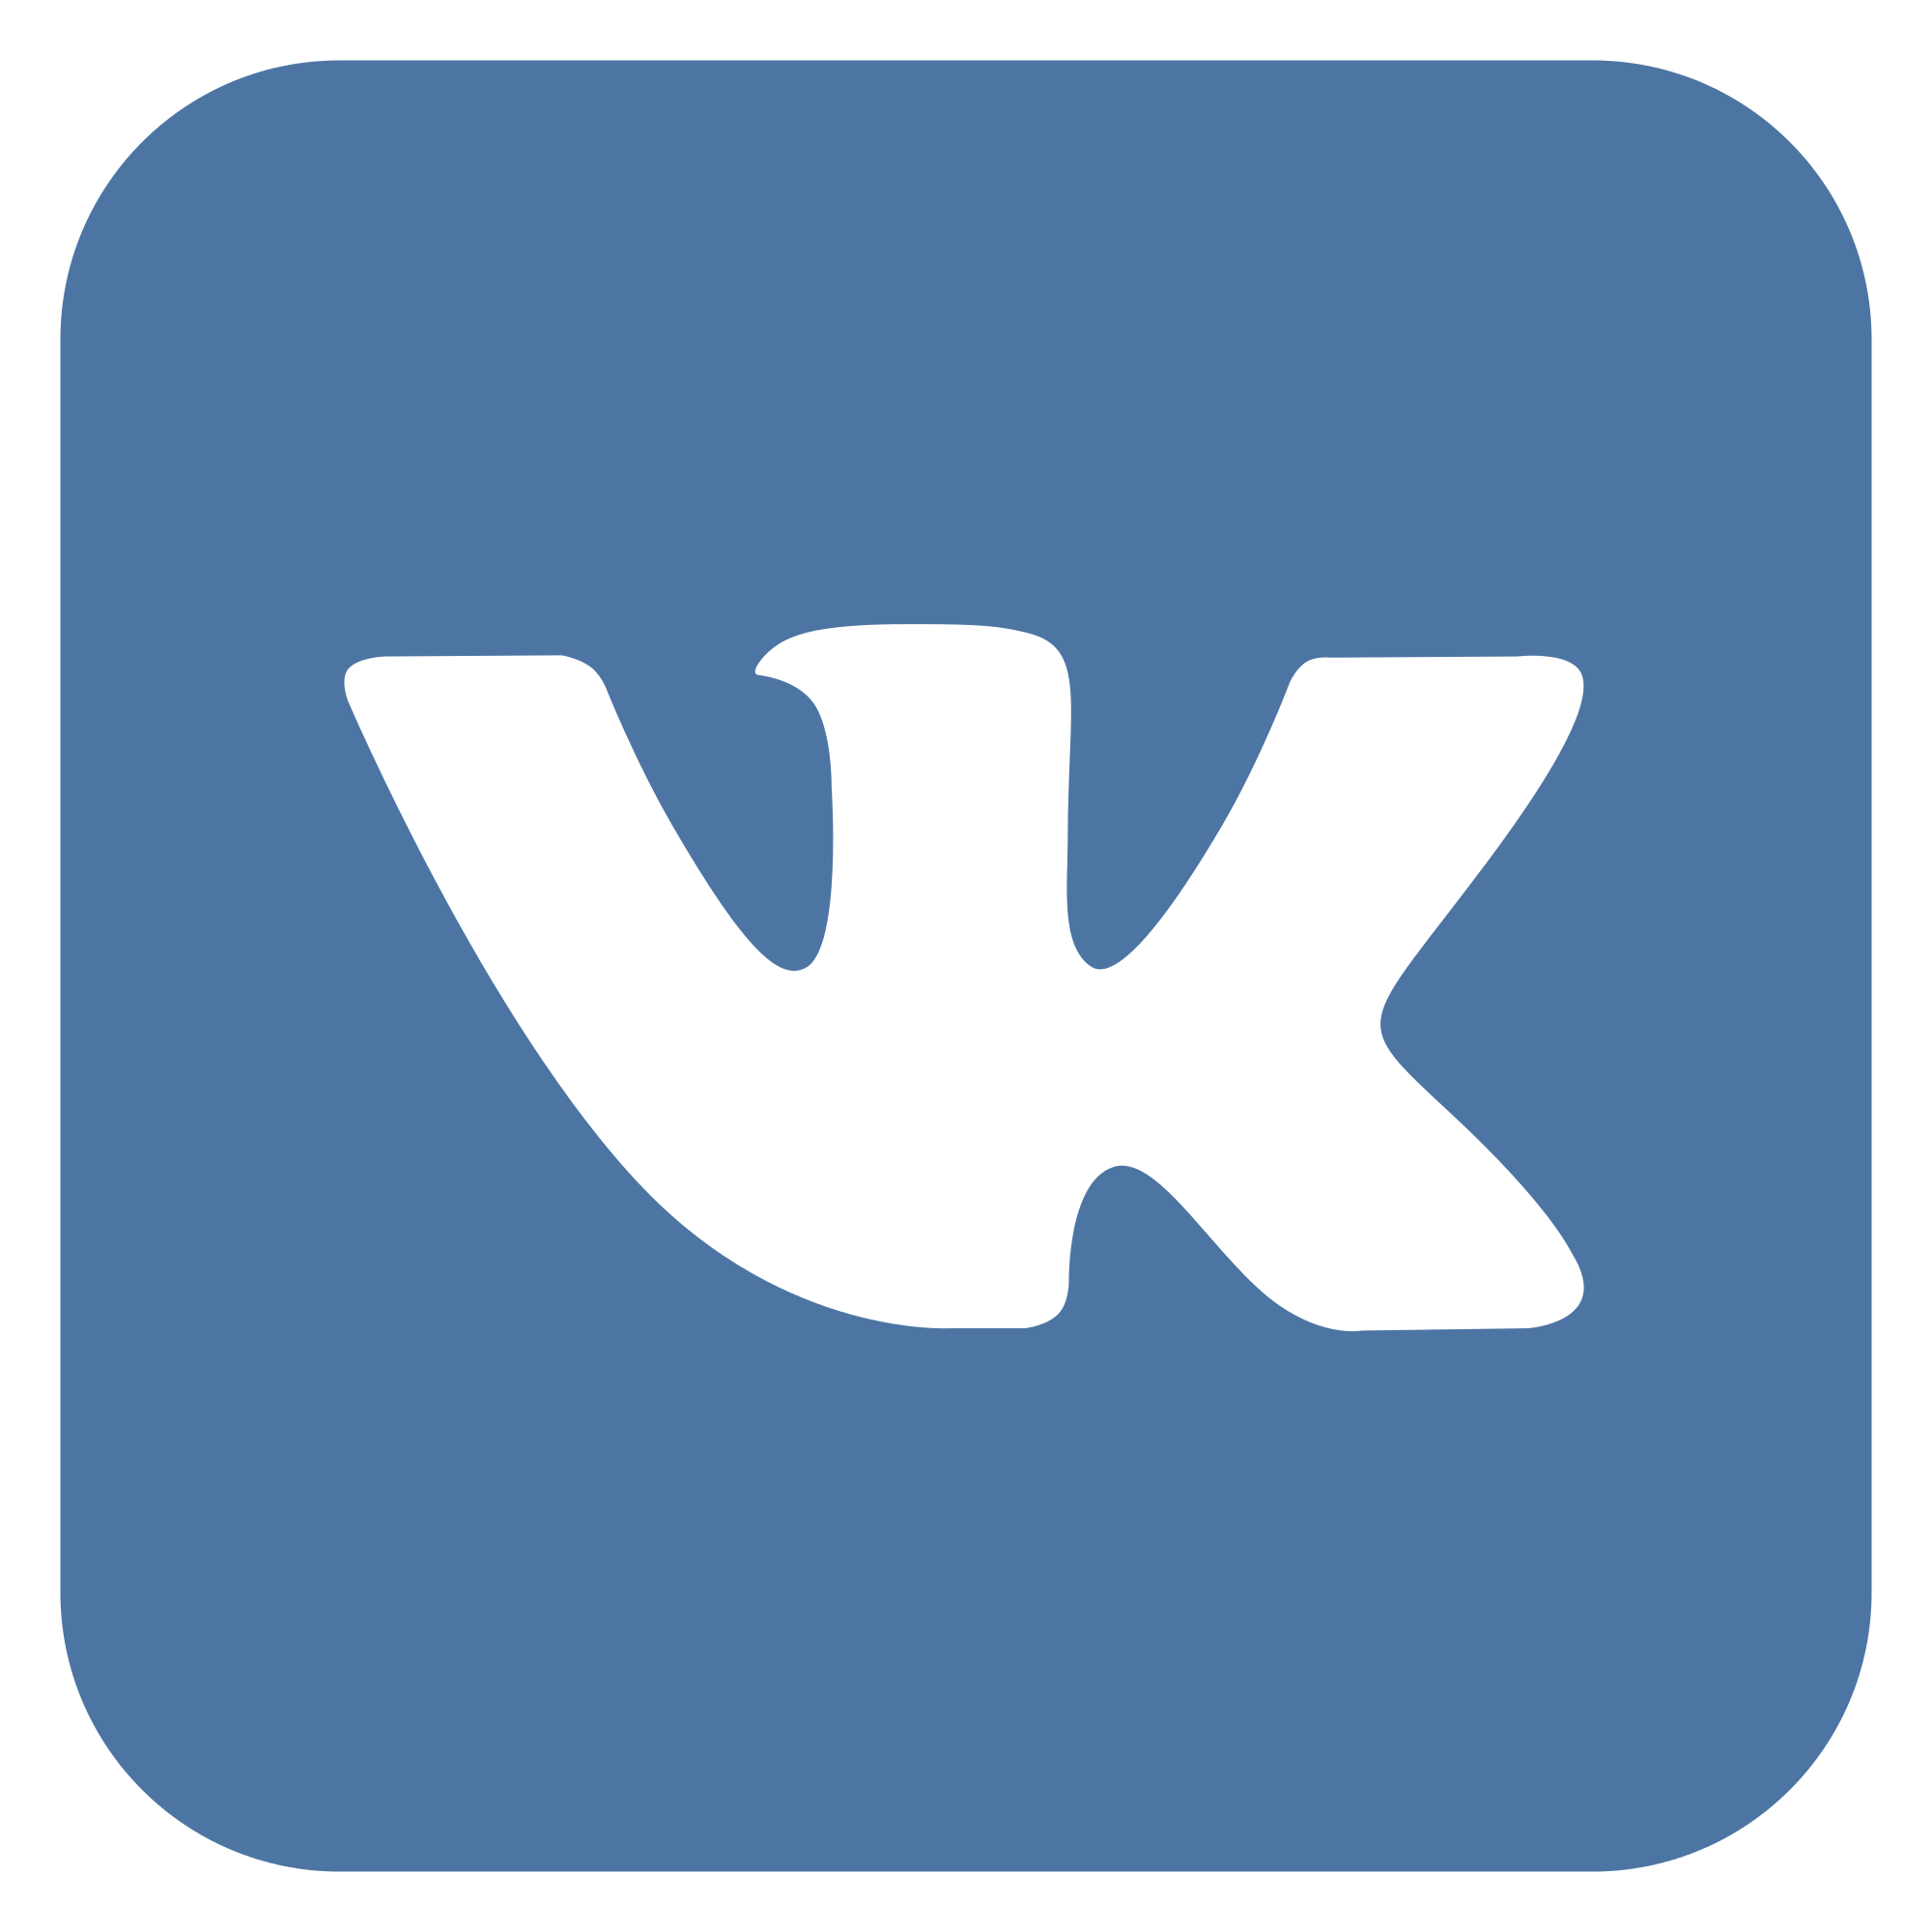 VK logo